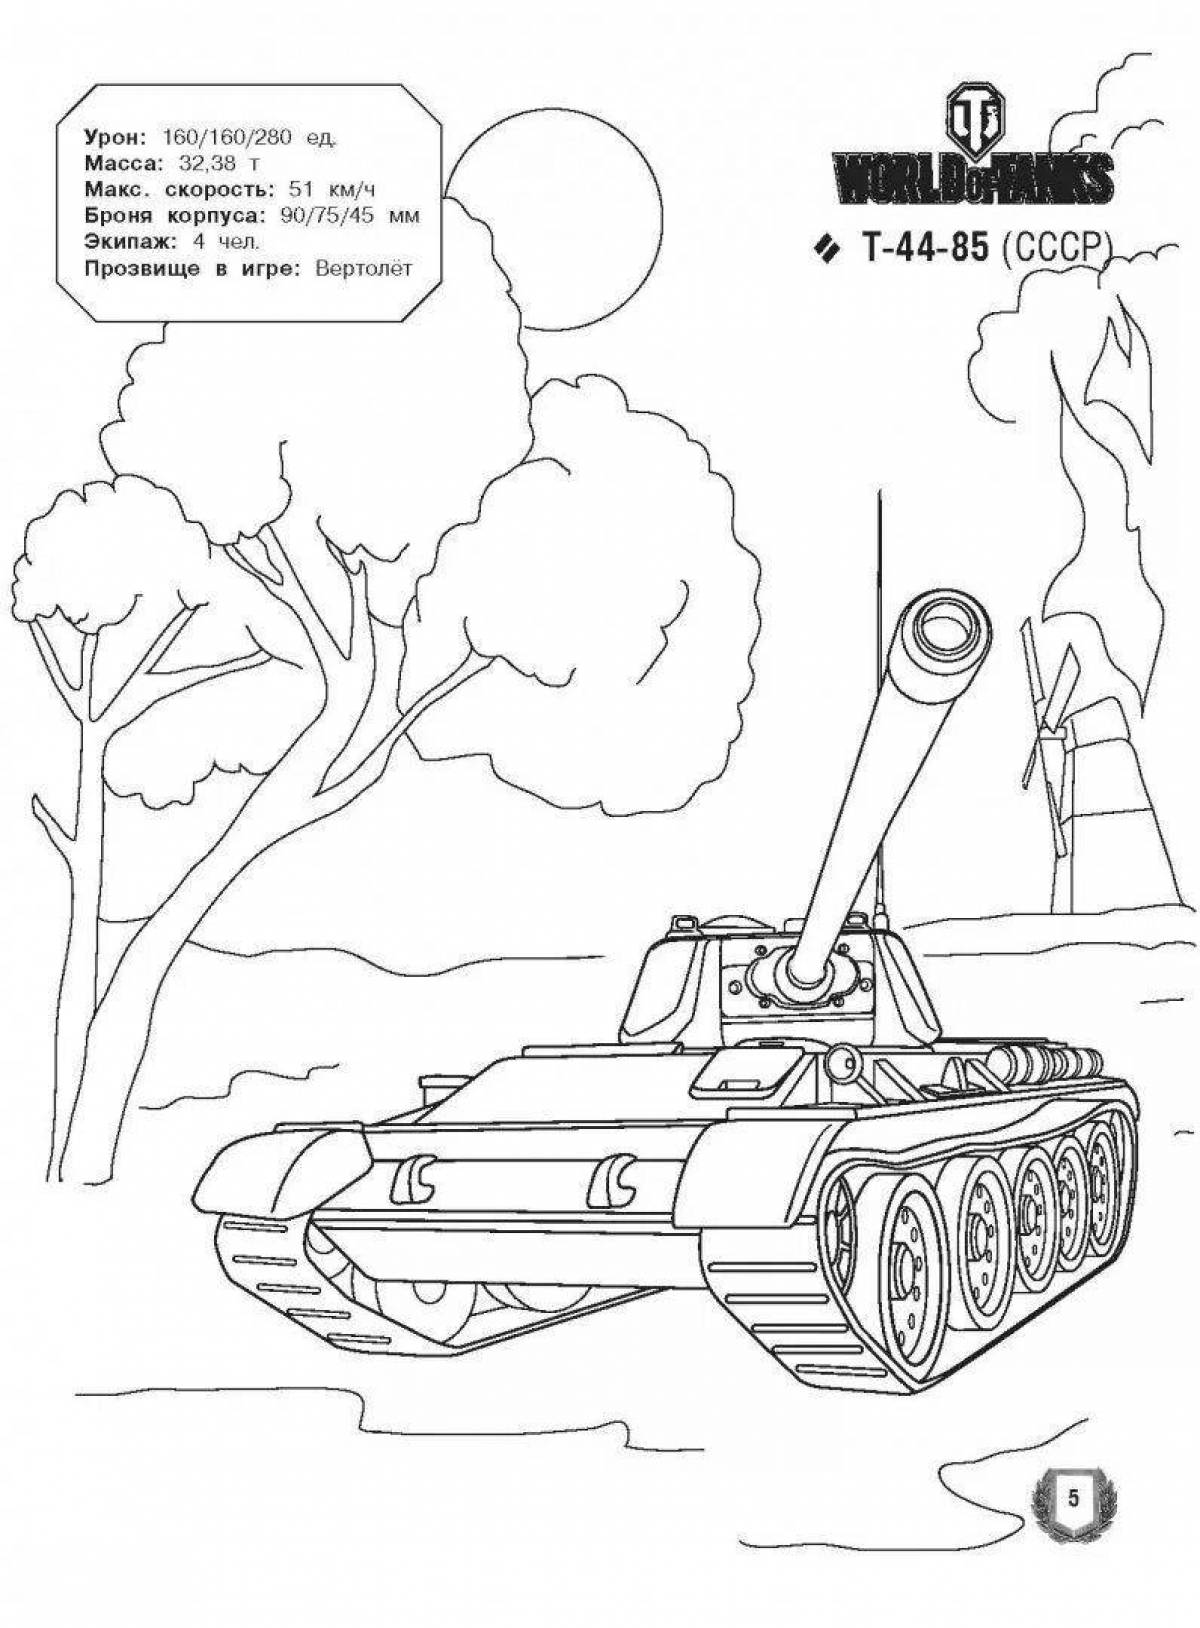 Привлекательная раскраска world of tanks